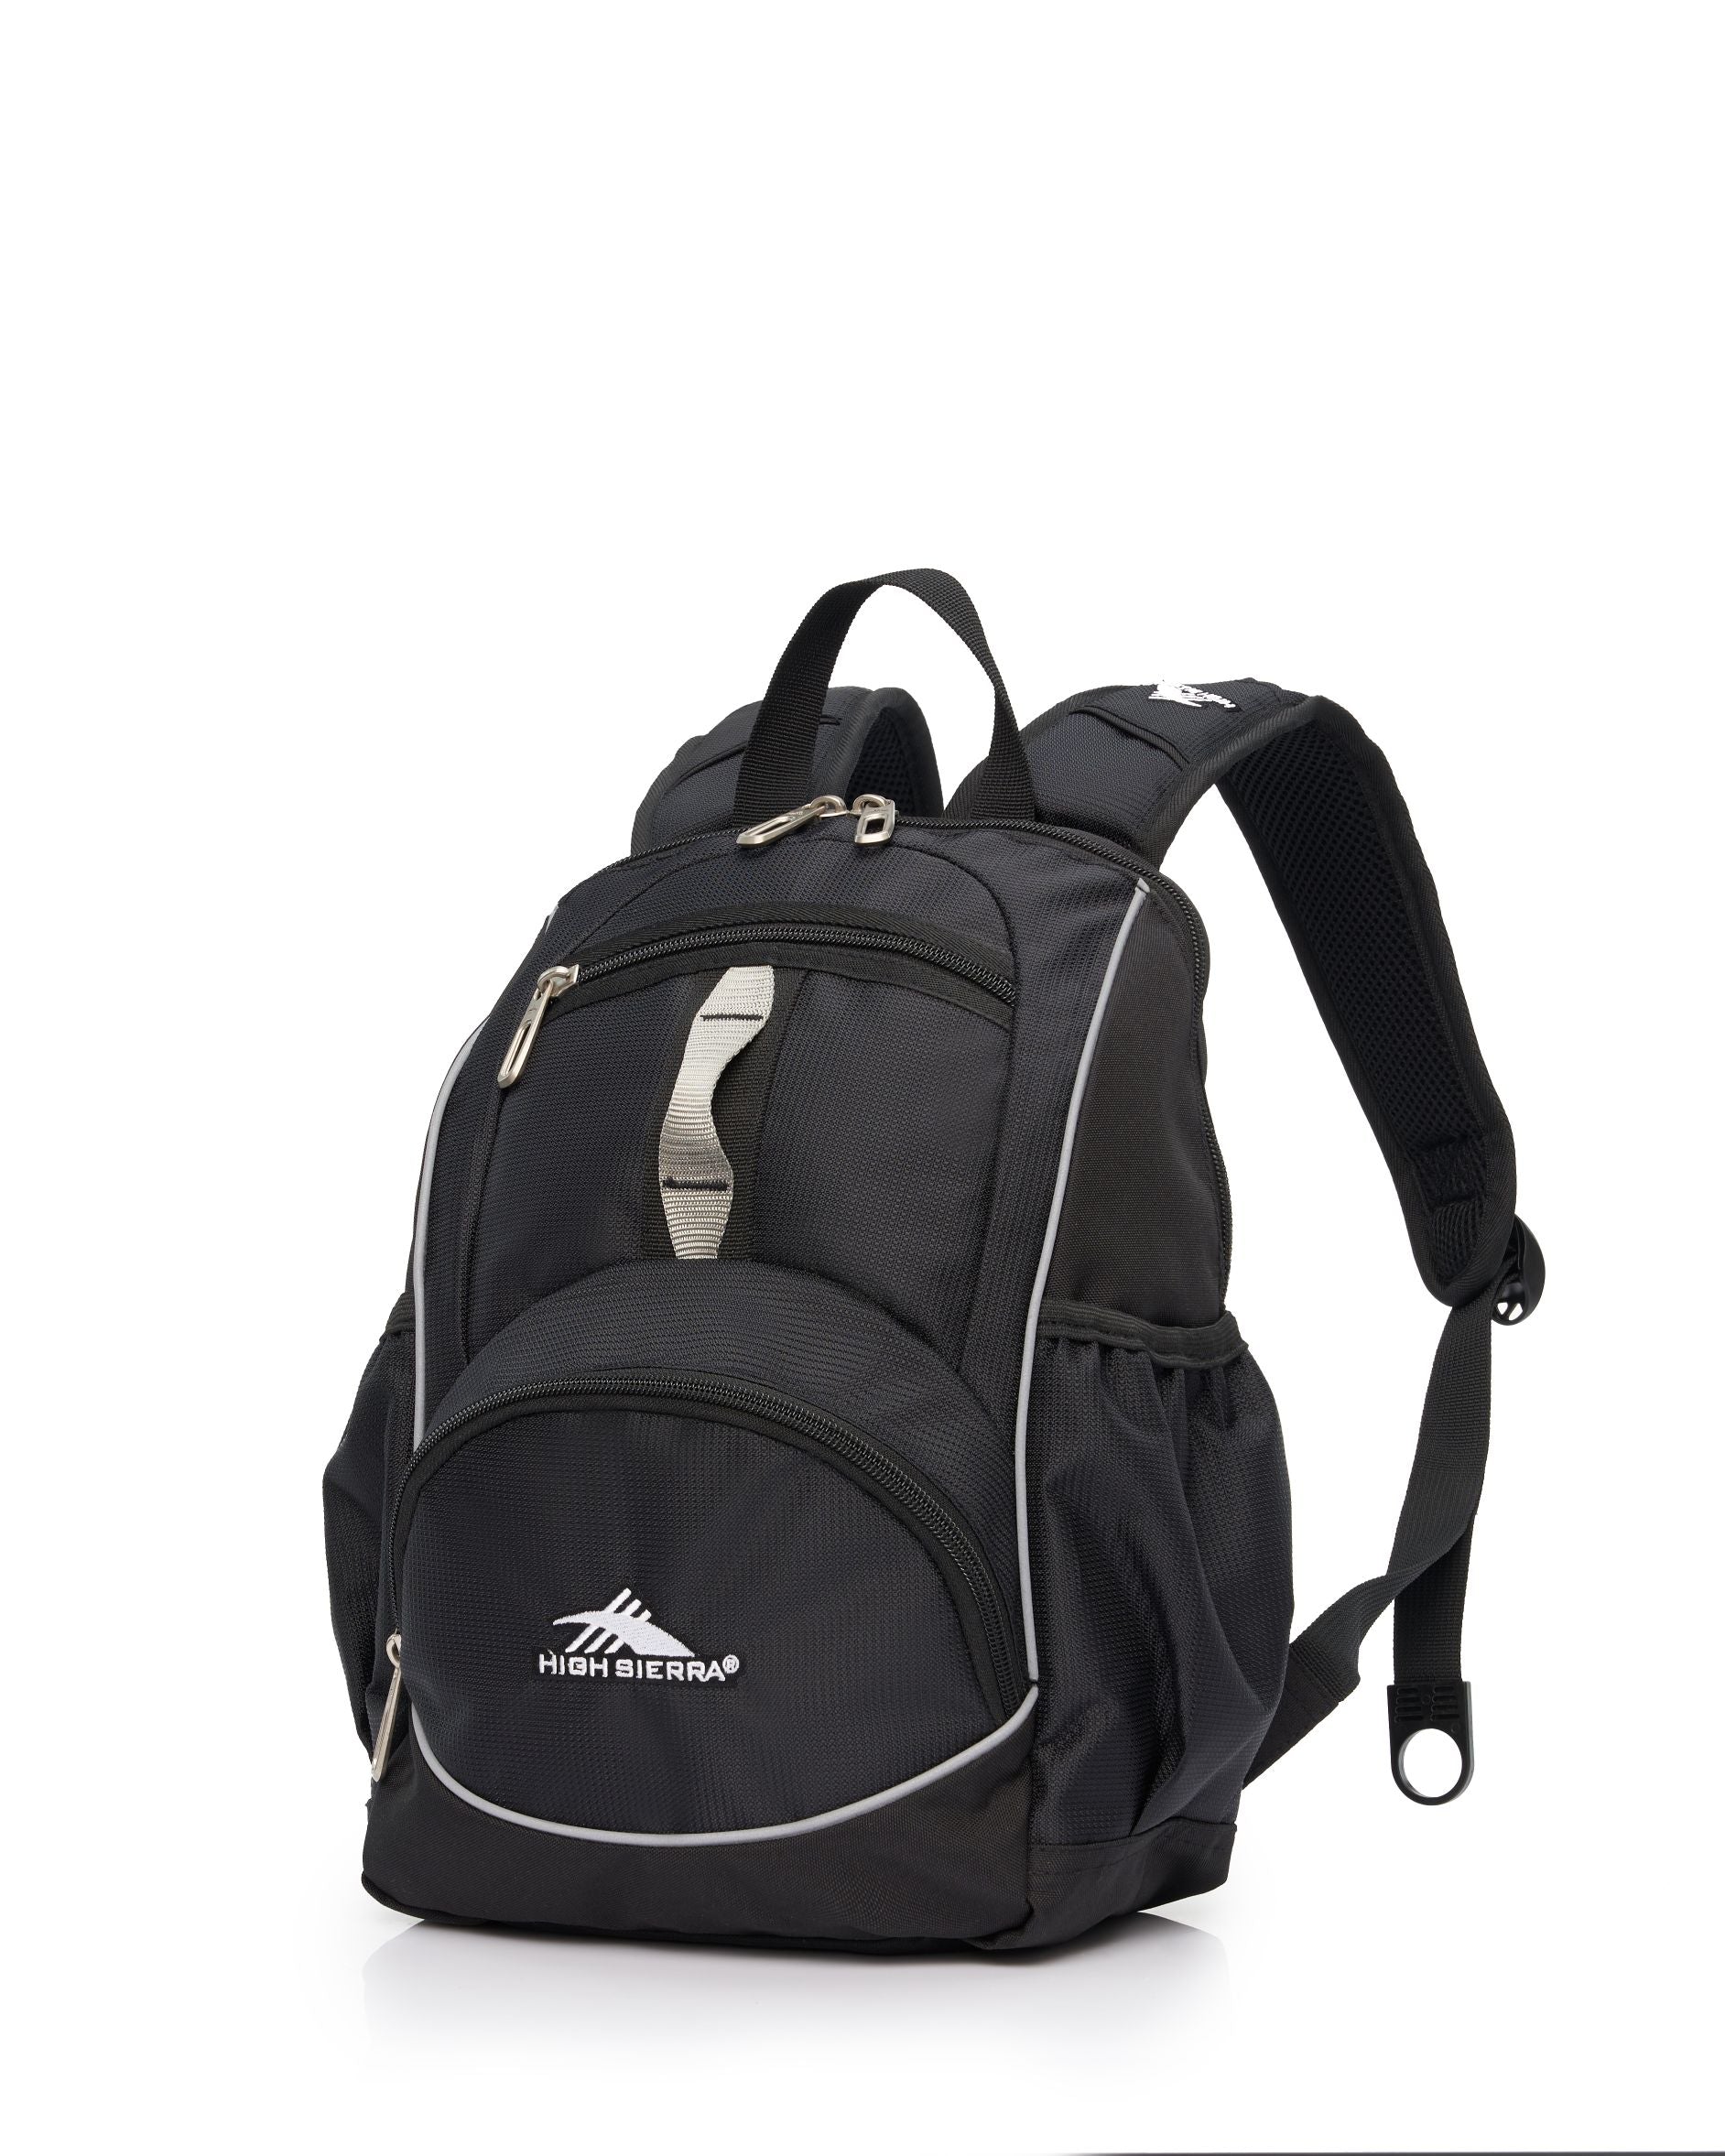 High Sierra - Mini Backpack 2.0 - Black/Silver